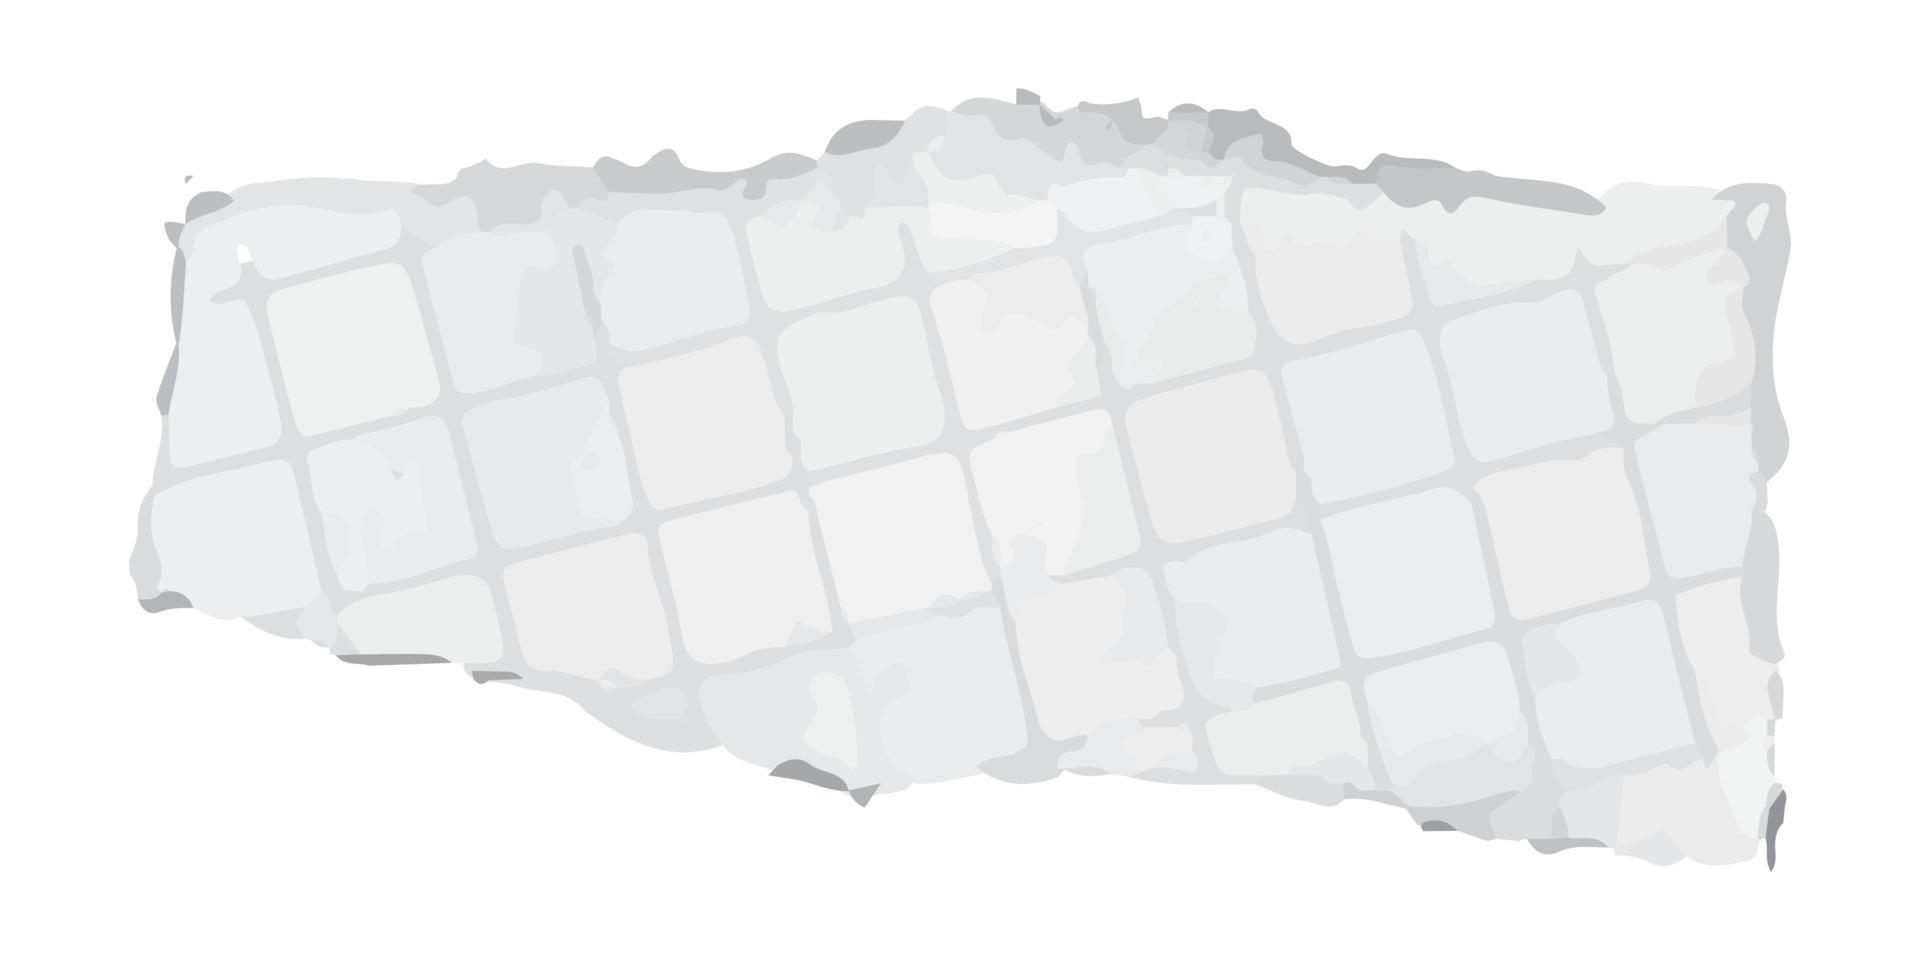 illustration vectorielle de morceaux de papier déchirés. fond de texture graphique pour la conception. vecteur